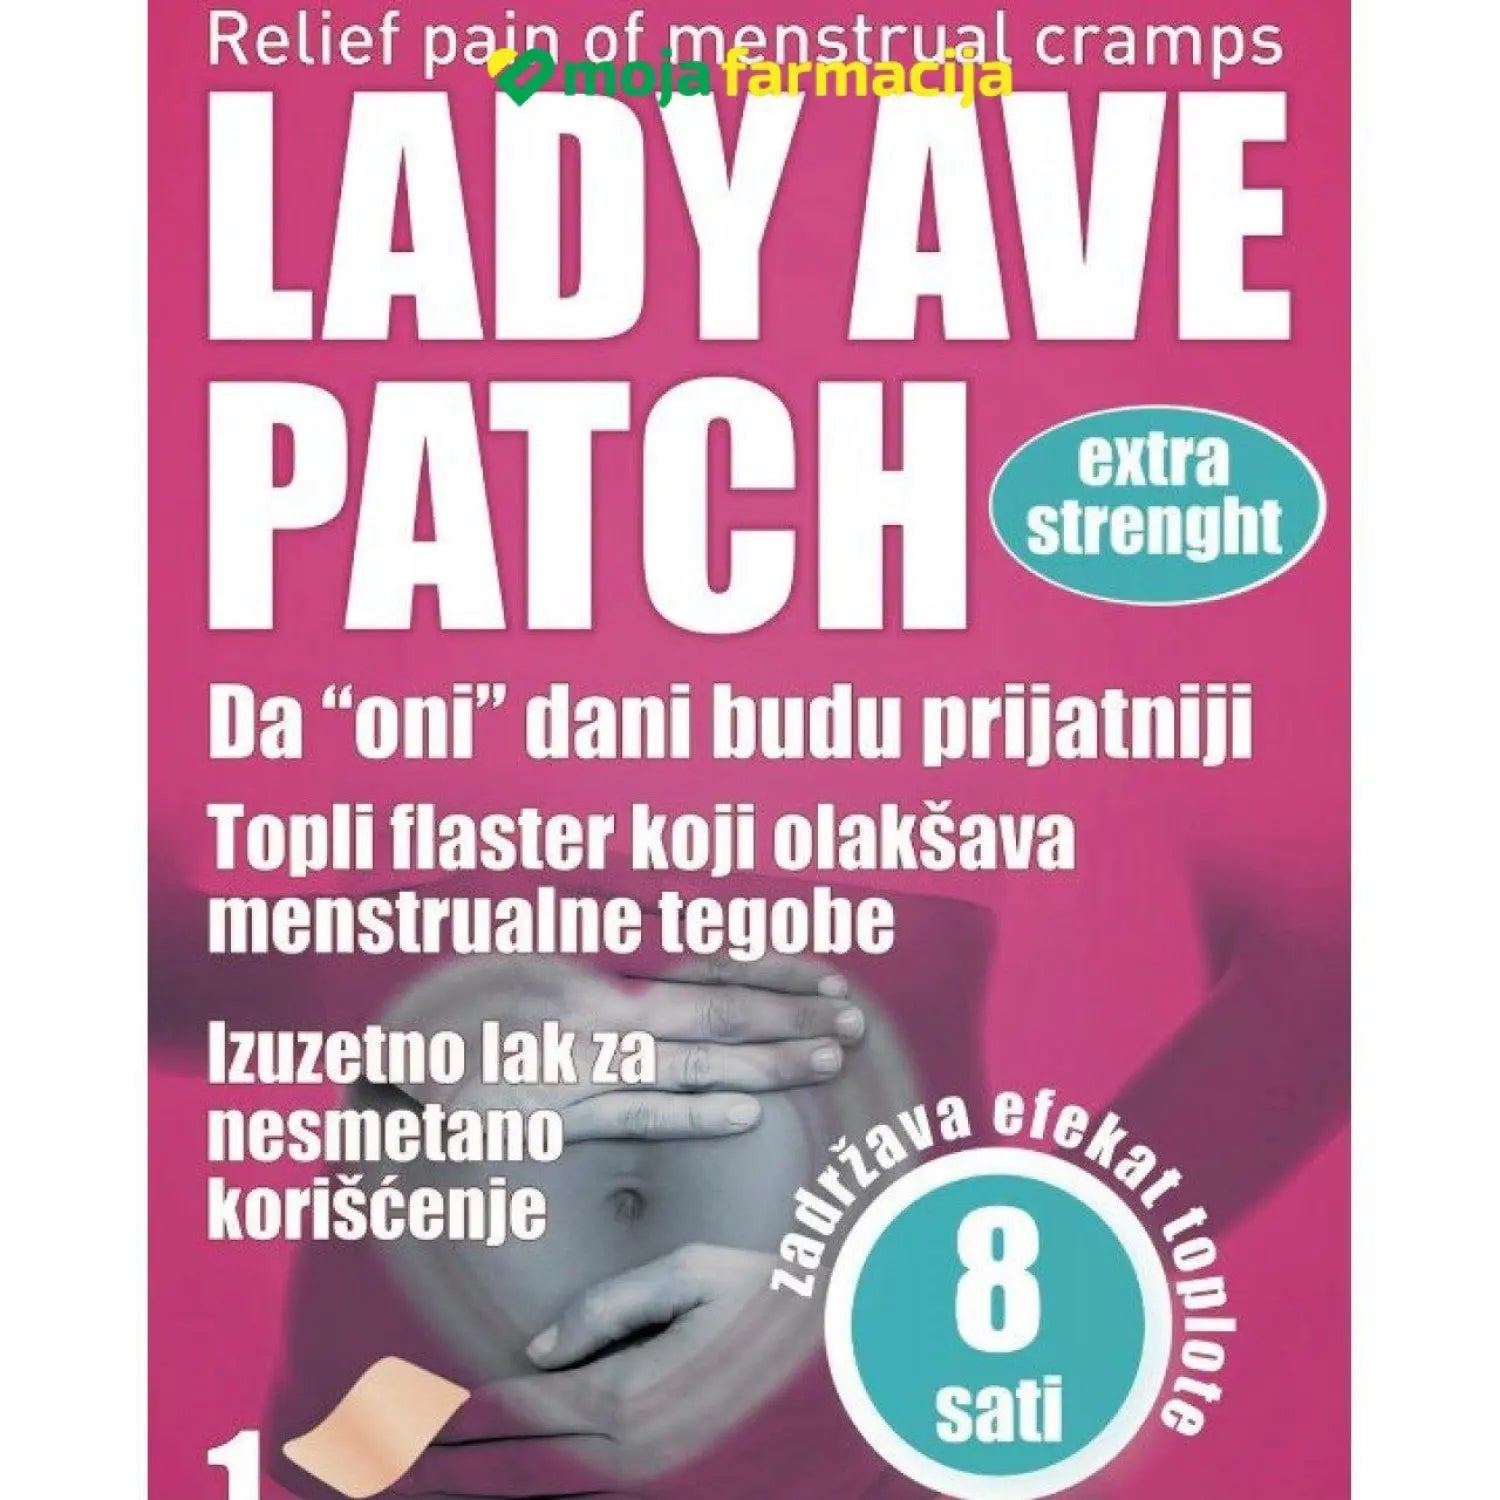 Slika proizvoda Ave Patch Lady Flaster za menstrualne tegobe iz online apoteke Moja Farmacija - BIH